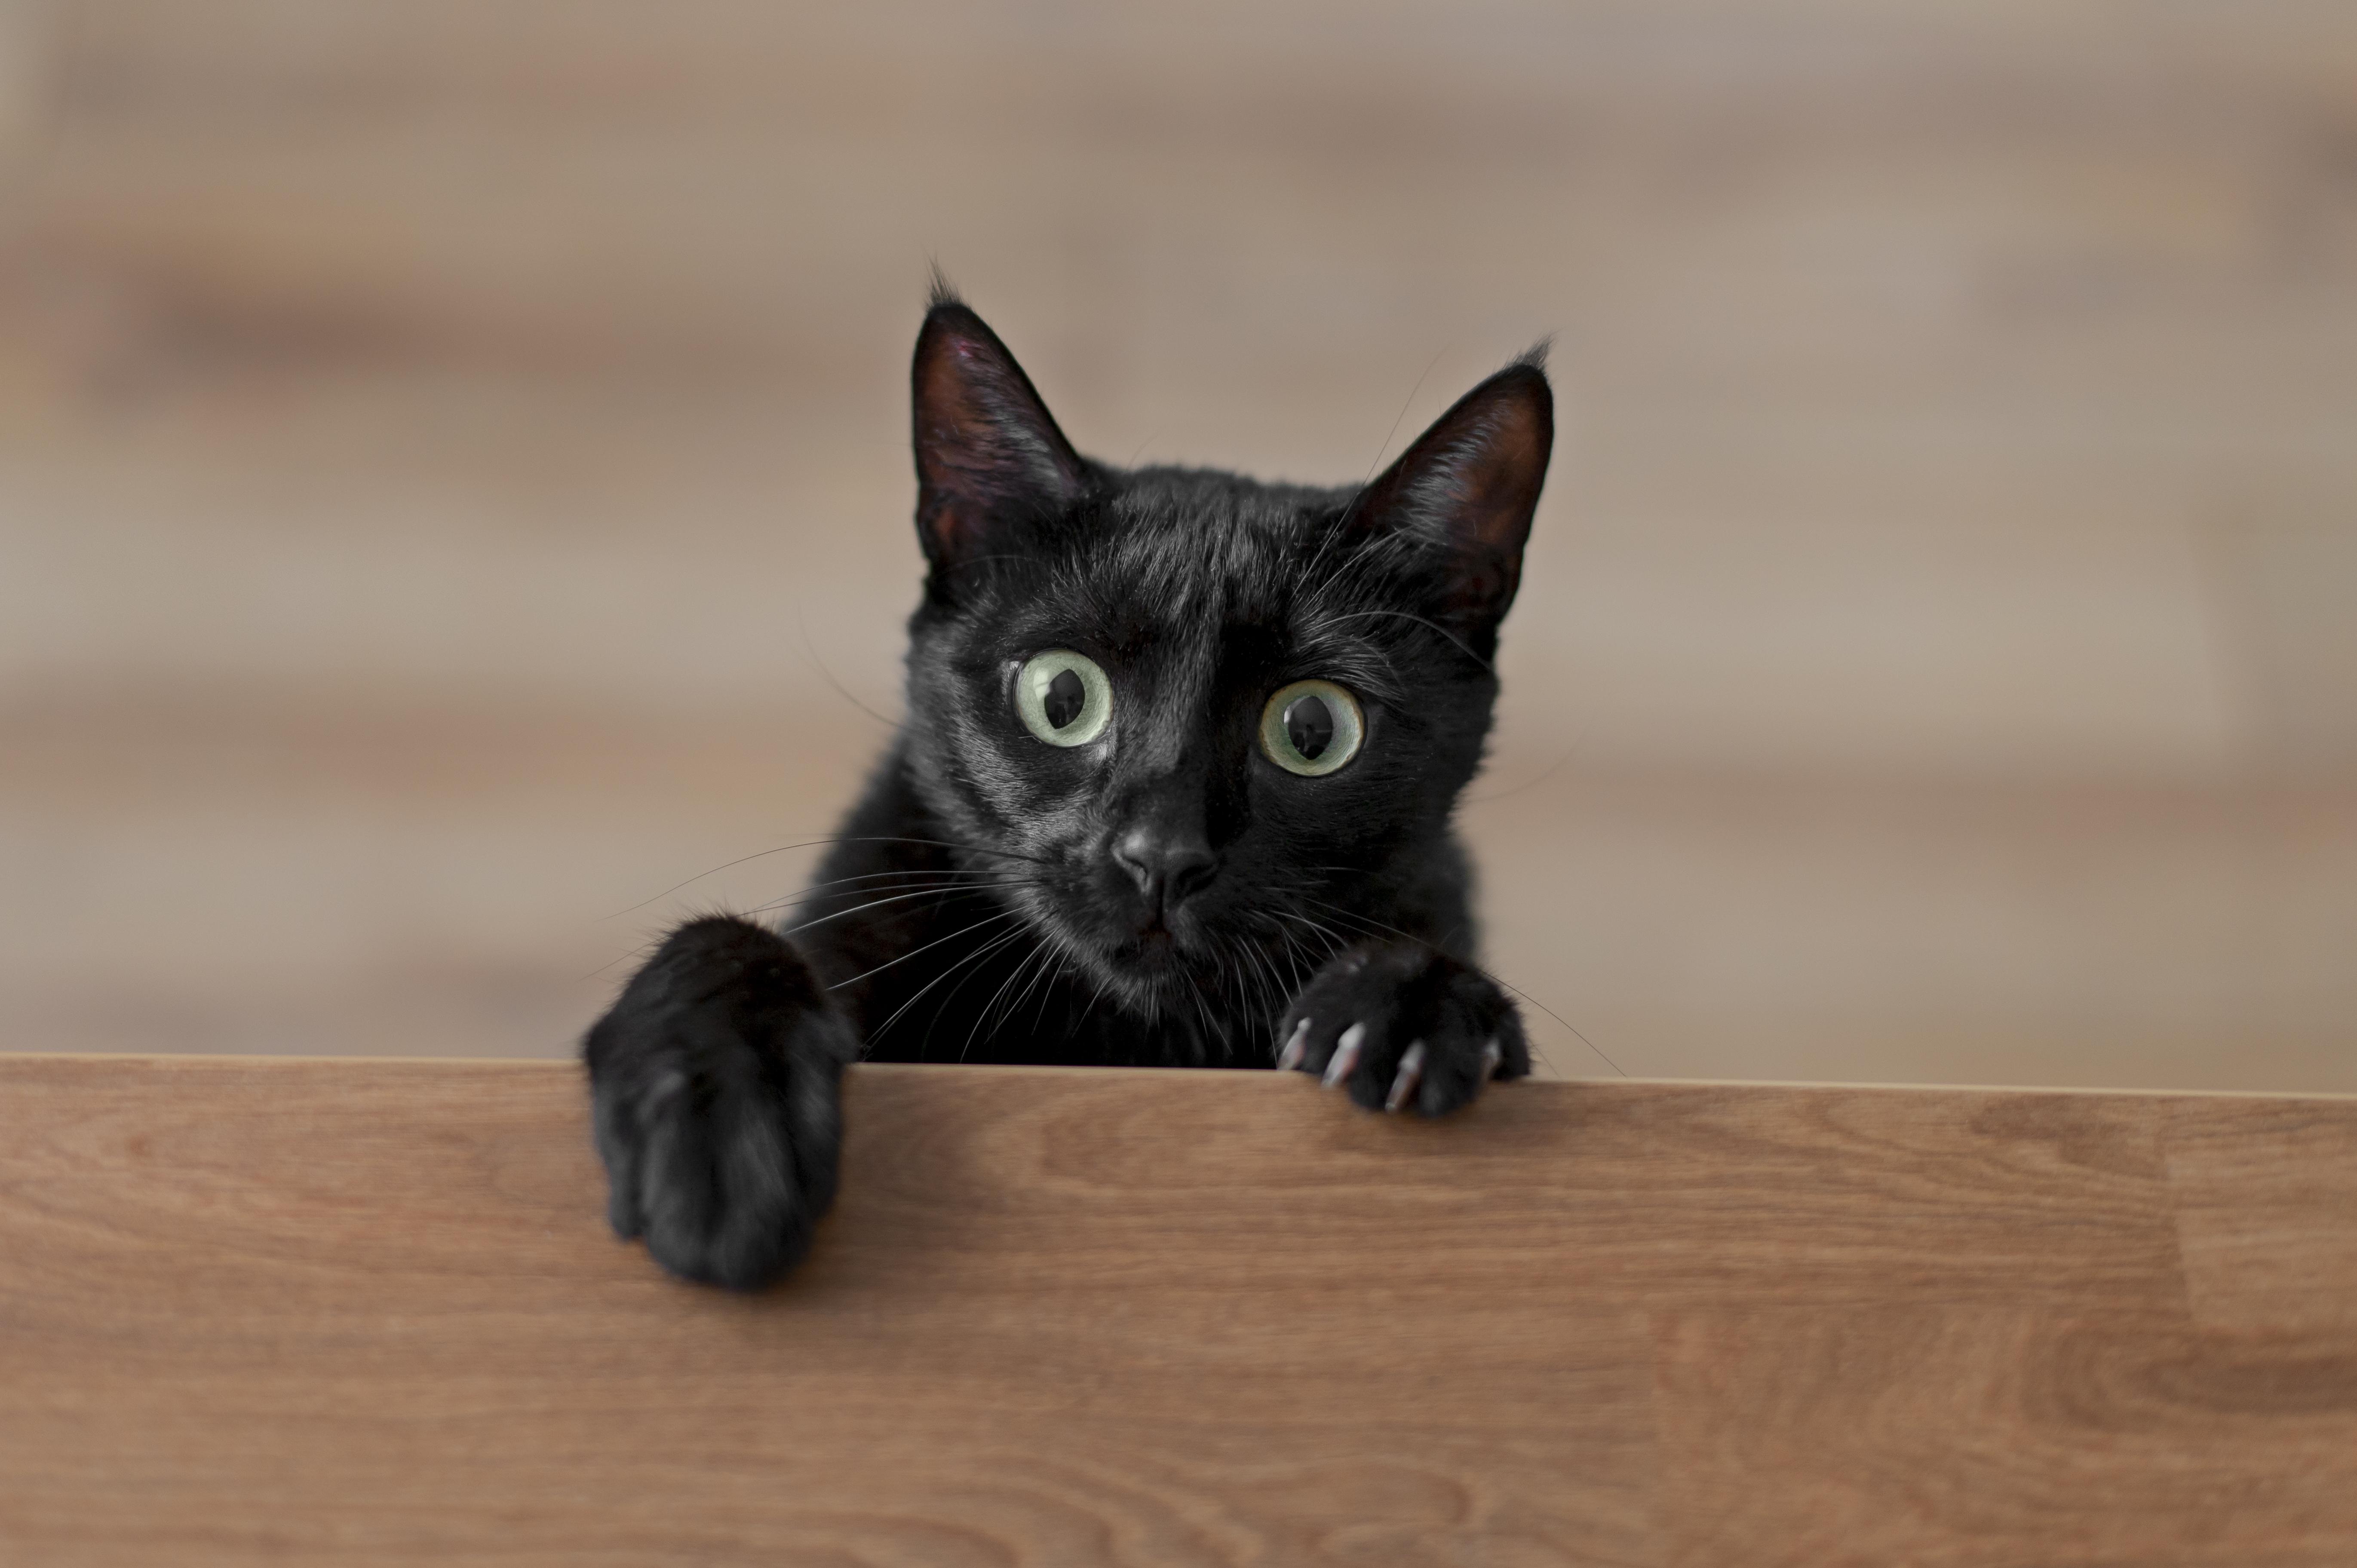 şaşkın bakan siyah tüylü kedi